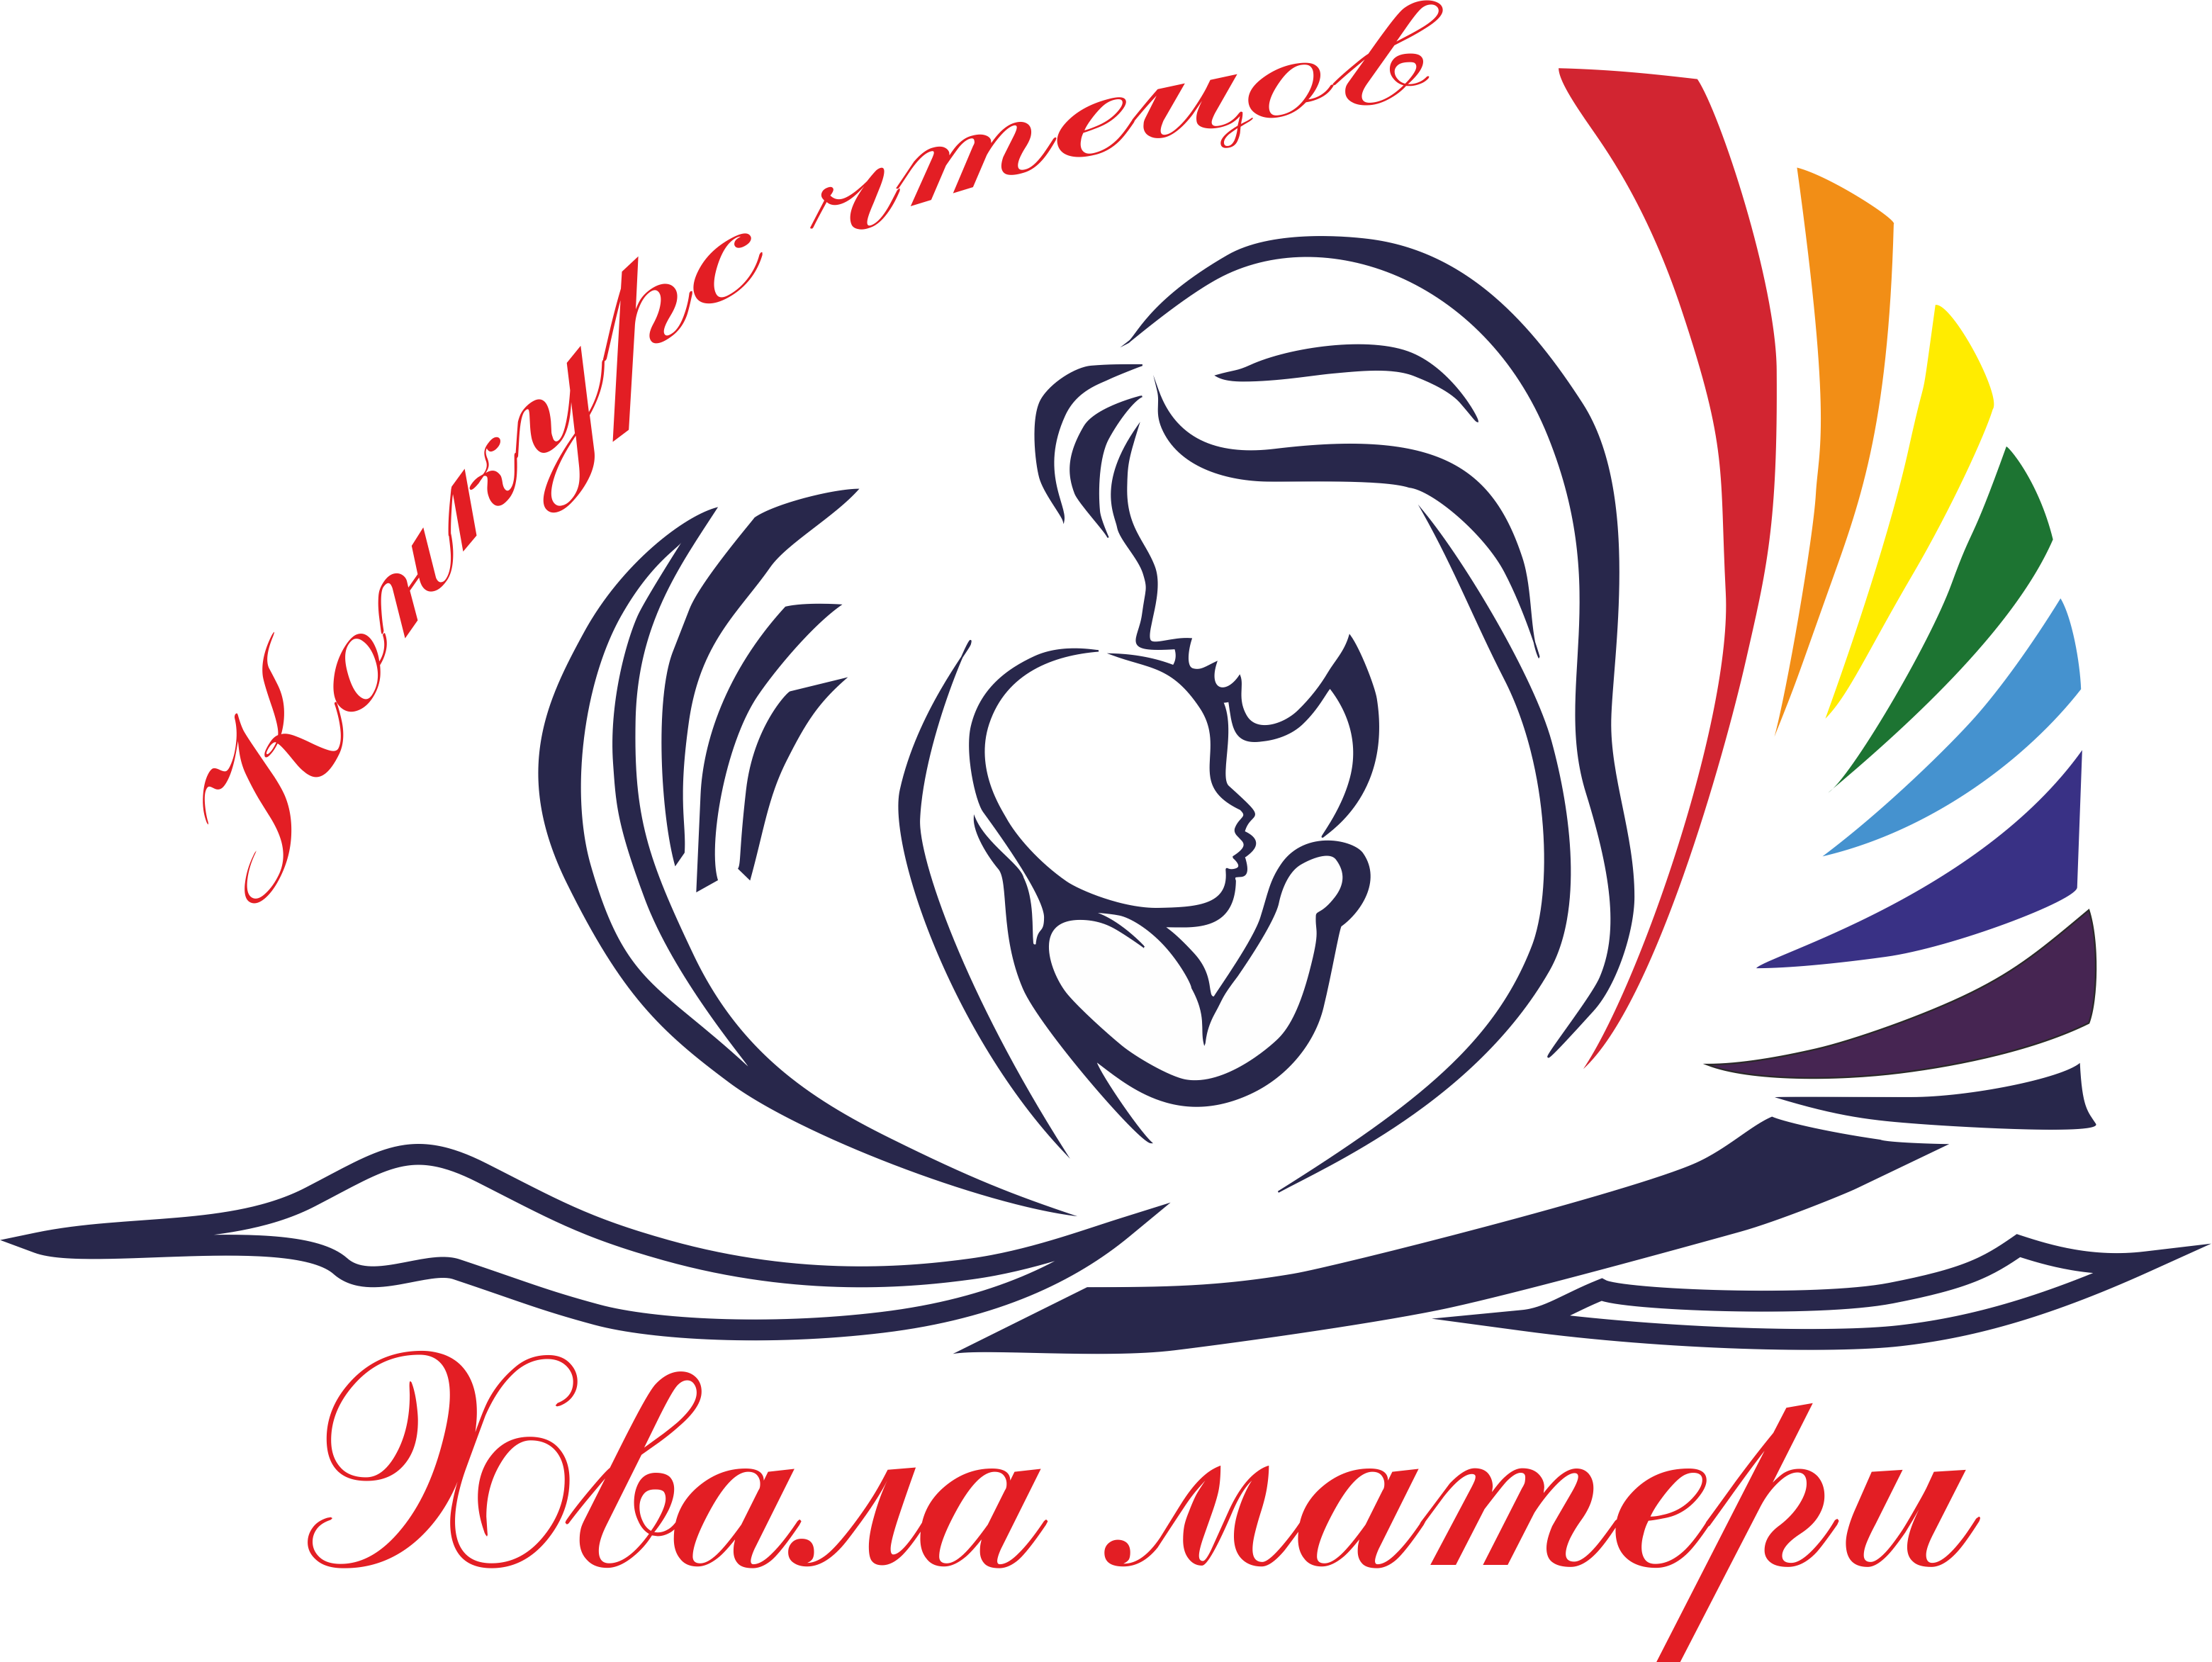 http://ddt-raduga.narod.ru/2017/Konkursy/logotip_khvala_materi.png